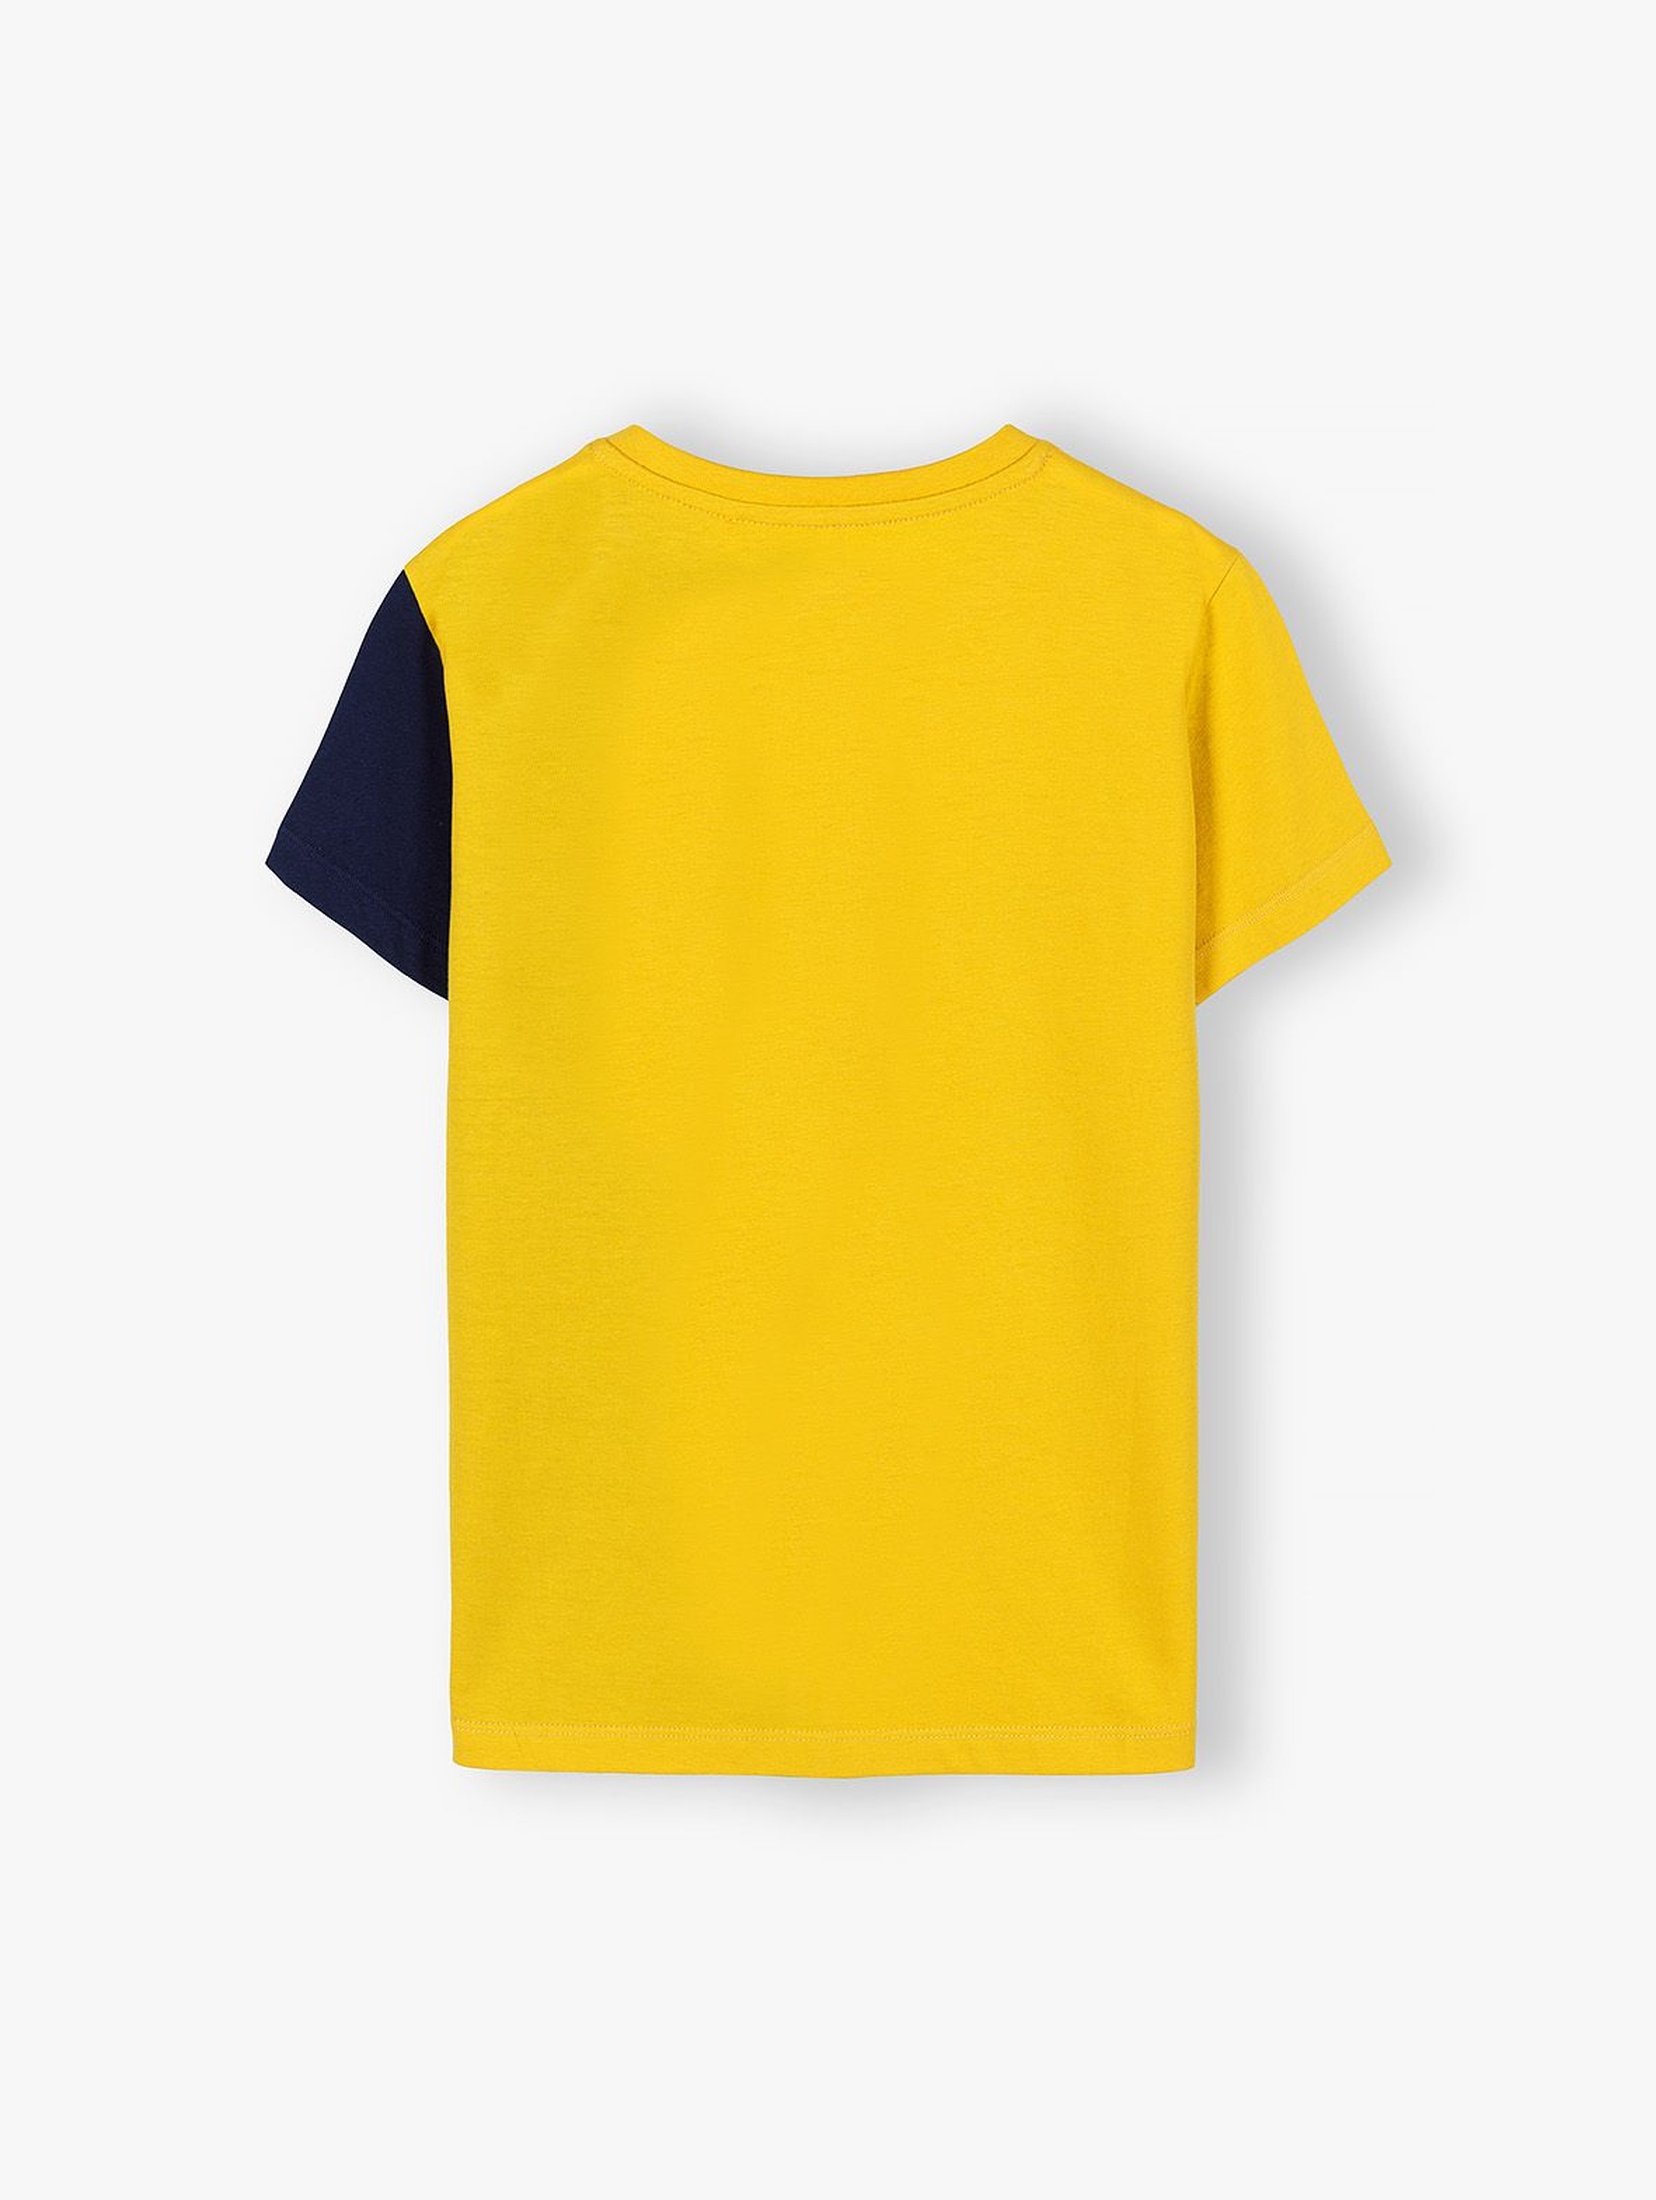 Bawełniany t-shirt chłopięcy żółto granatowy z nadrukiem